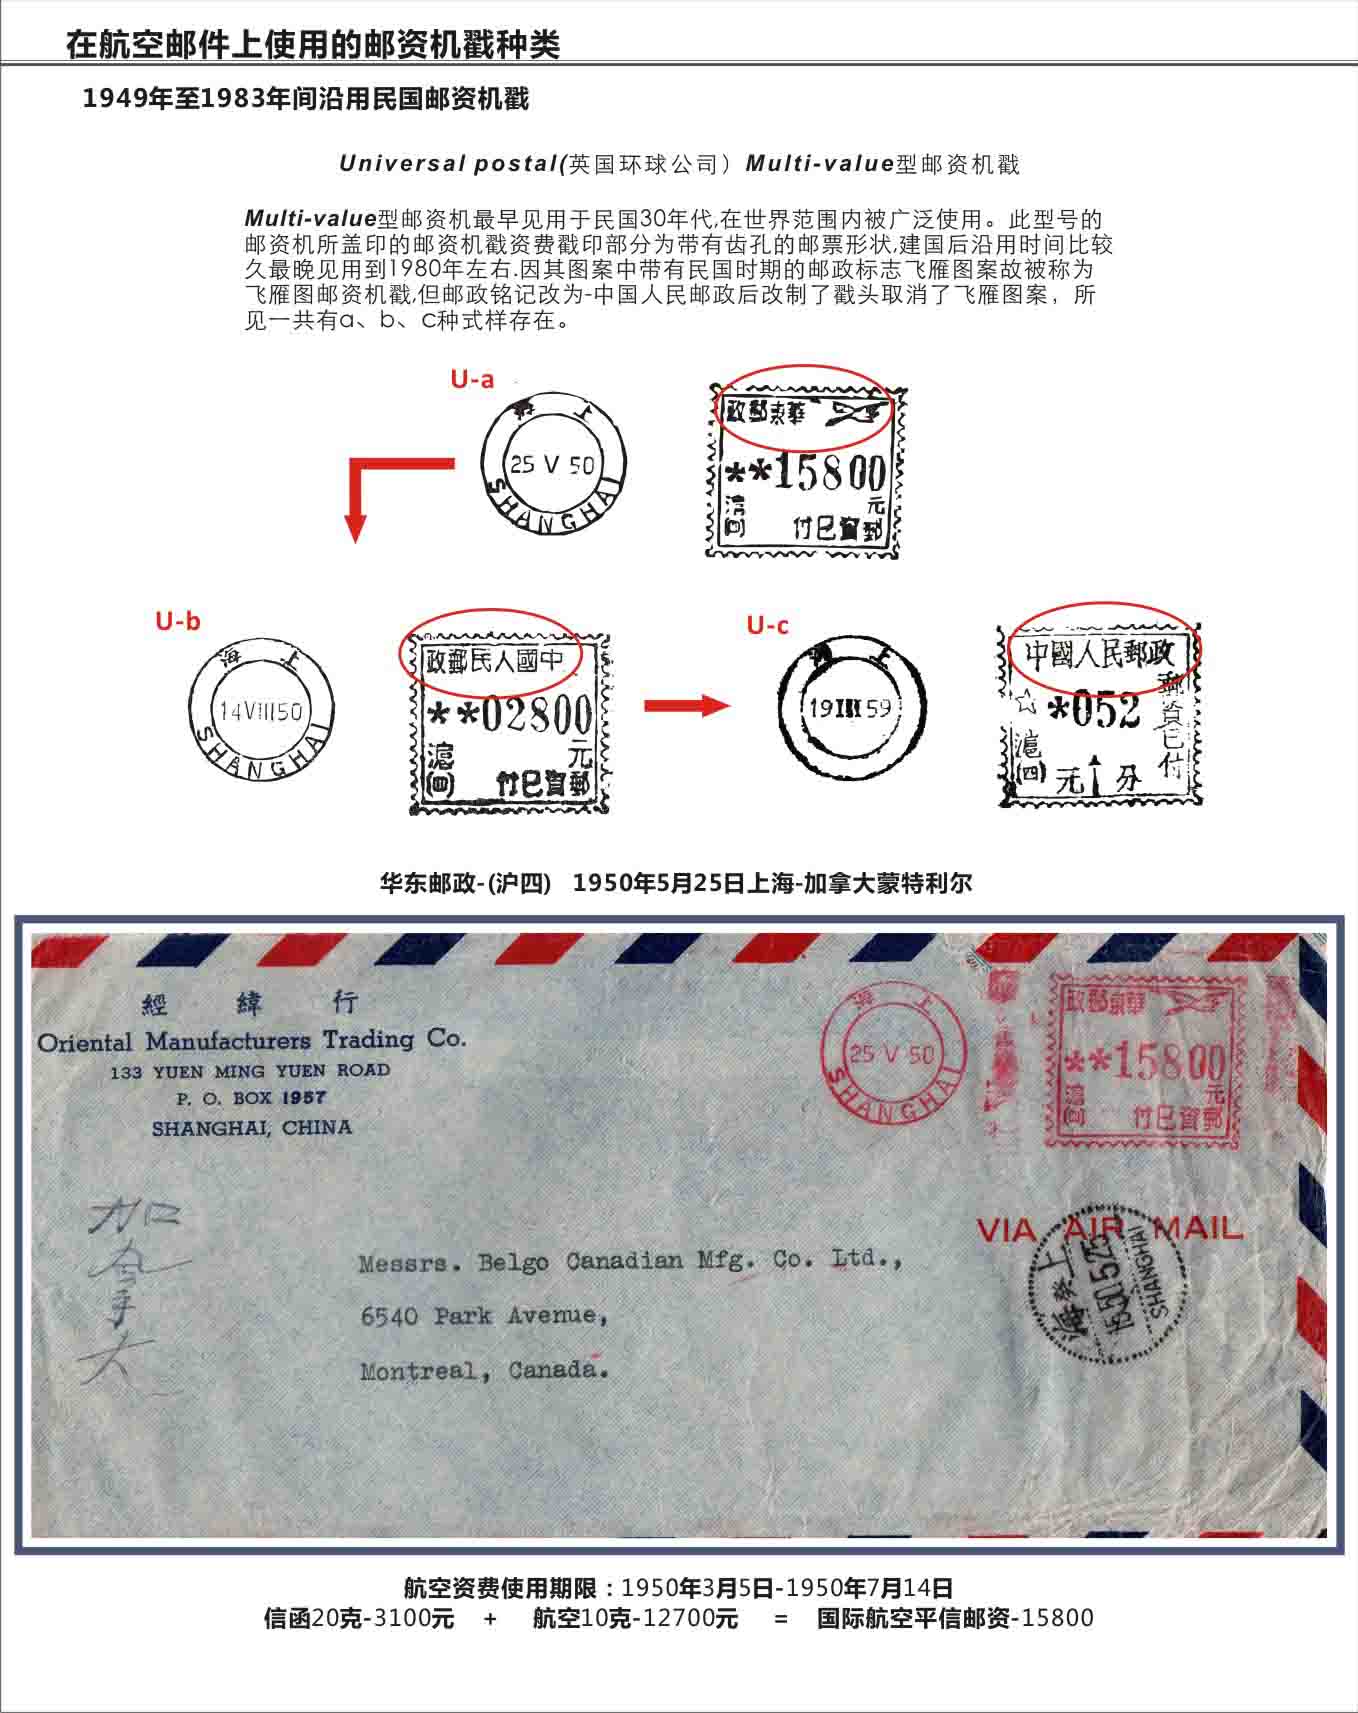 中国盖1有邮资机符志的航空邮件1949-1999.jpg